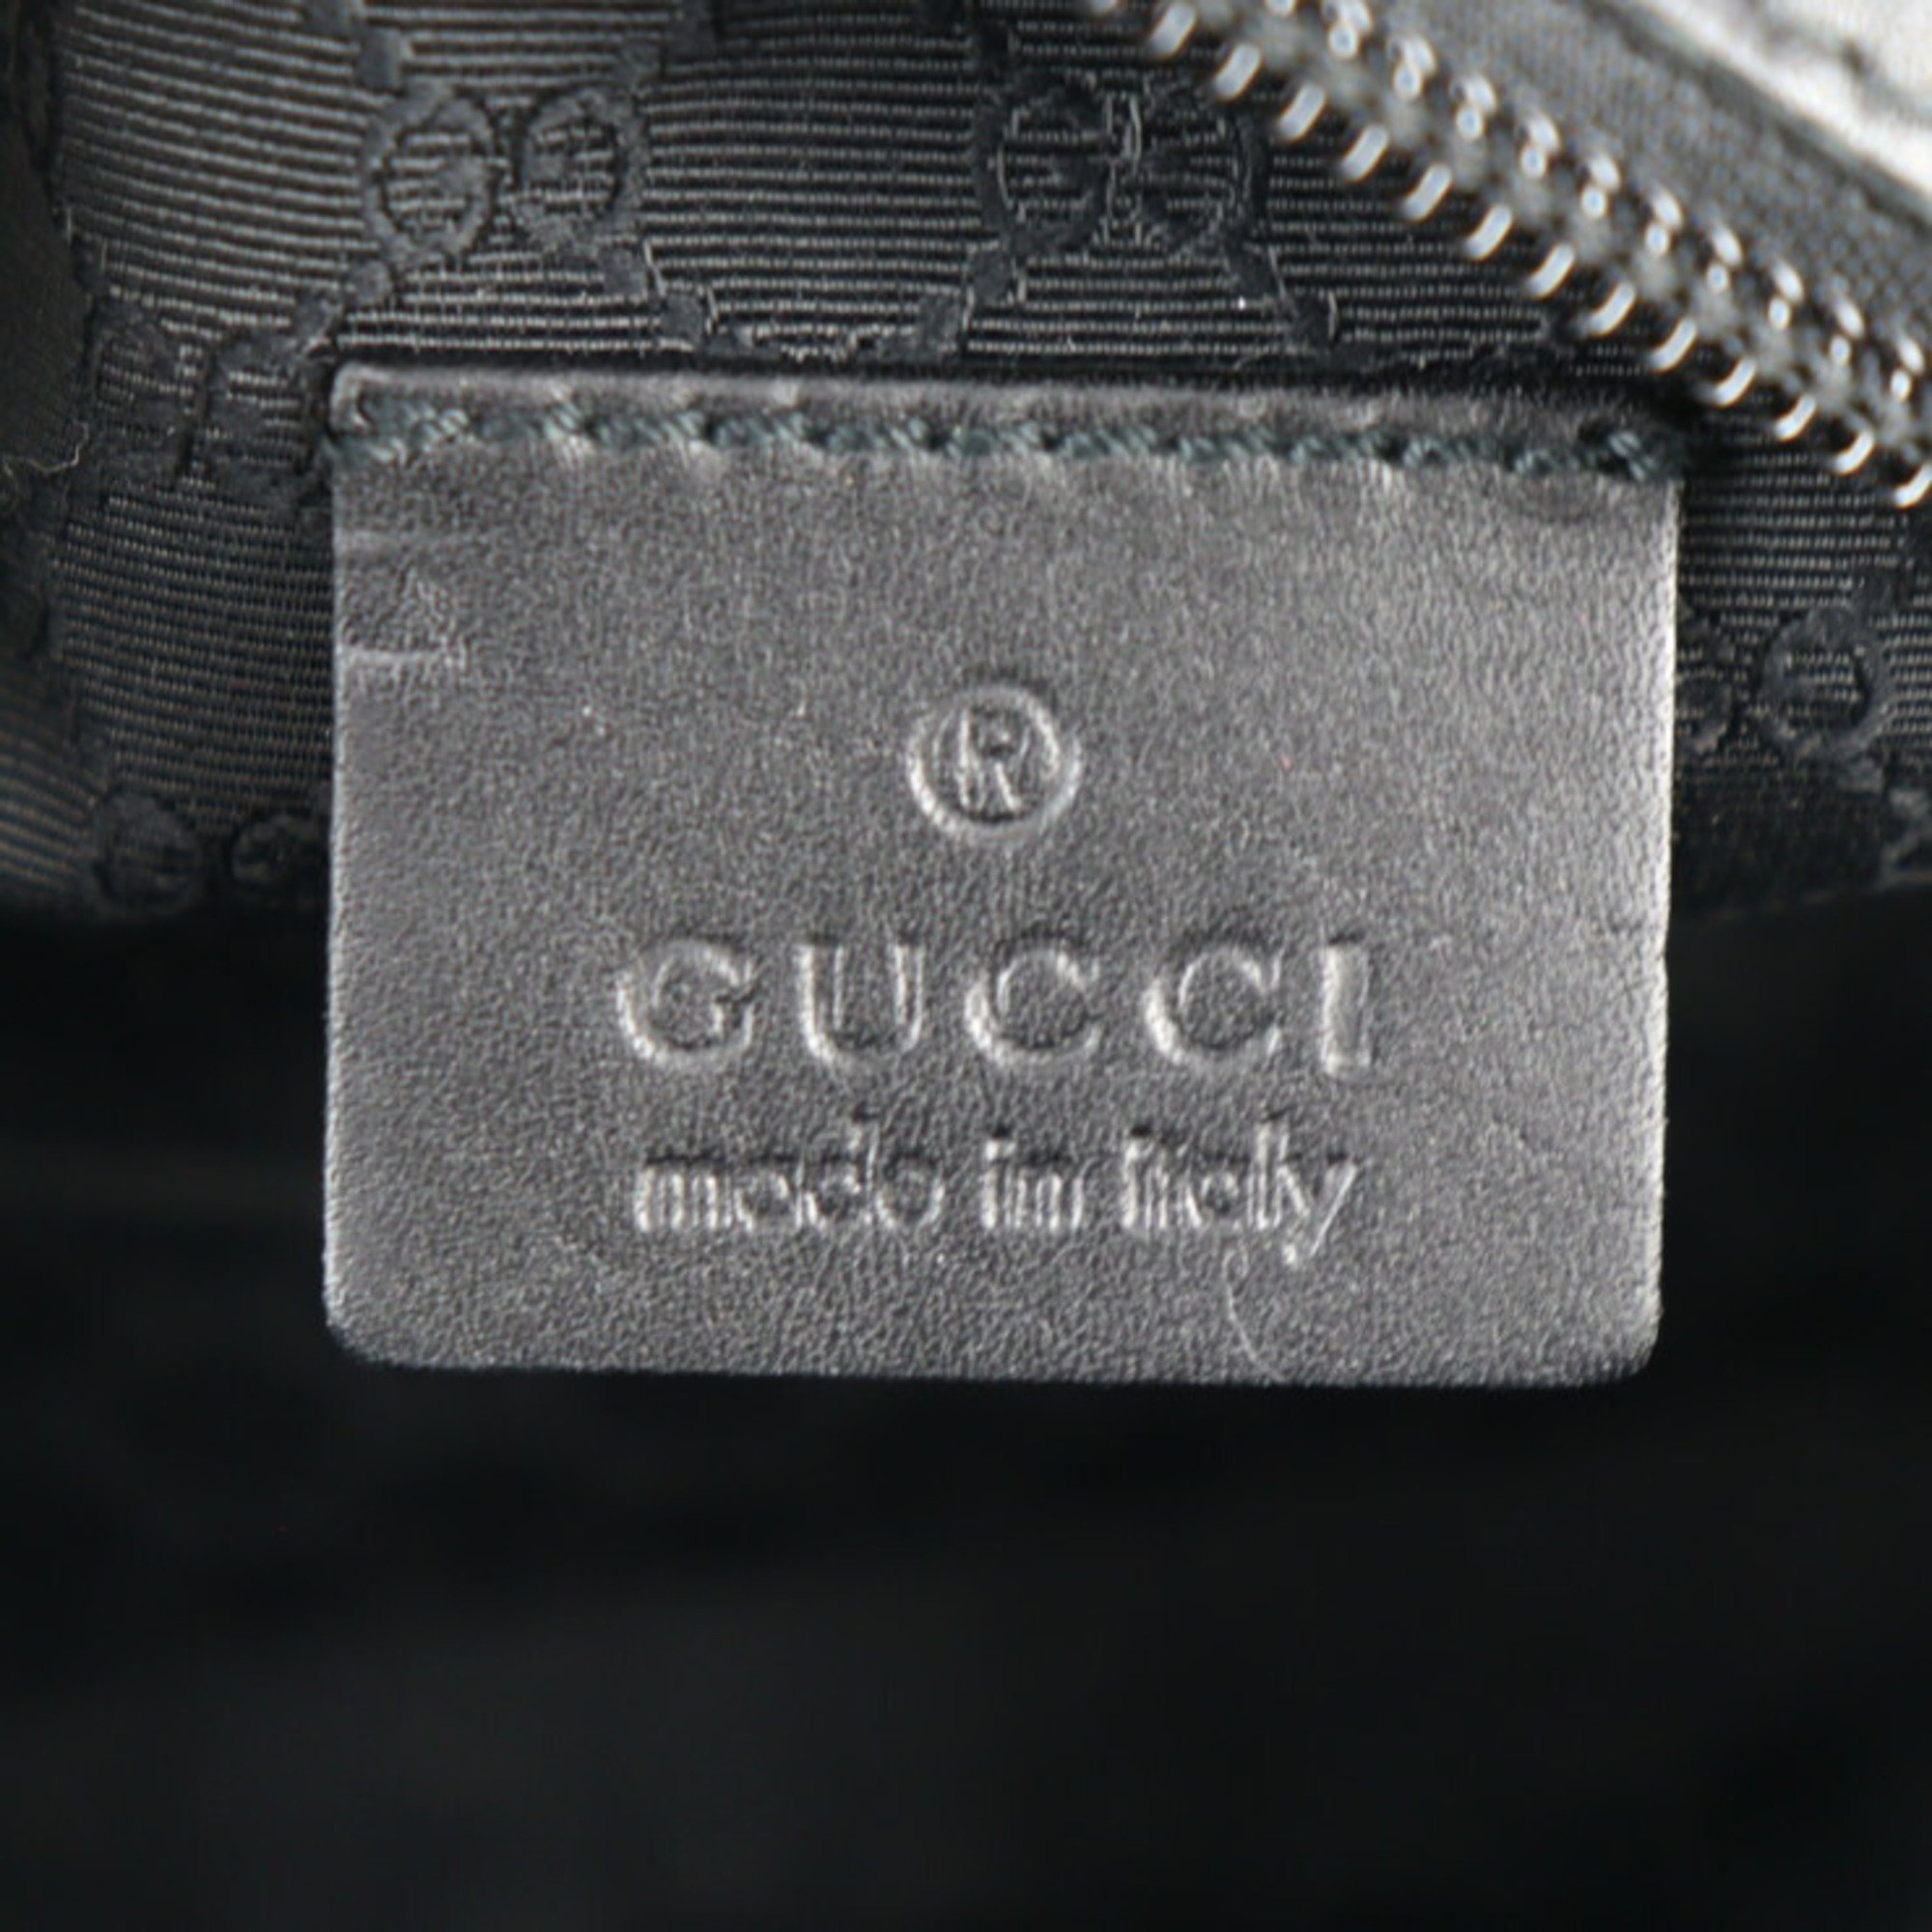 GUCCI Gucci Pouch 29596 Canvas Leather Black Cosmetic Accessory Case Pen Multi